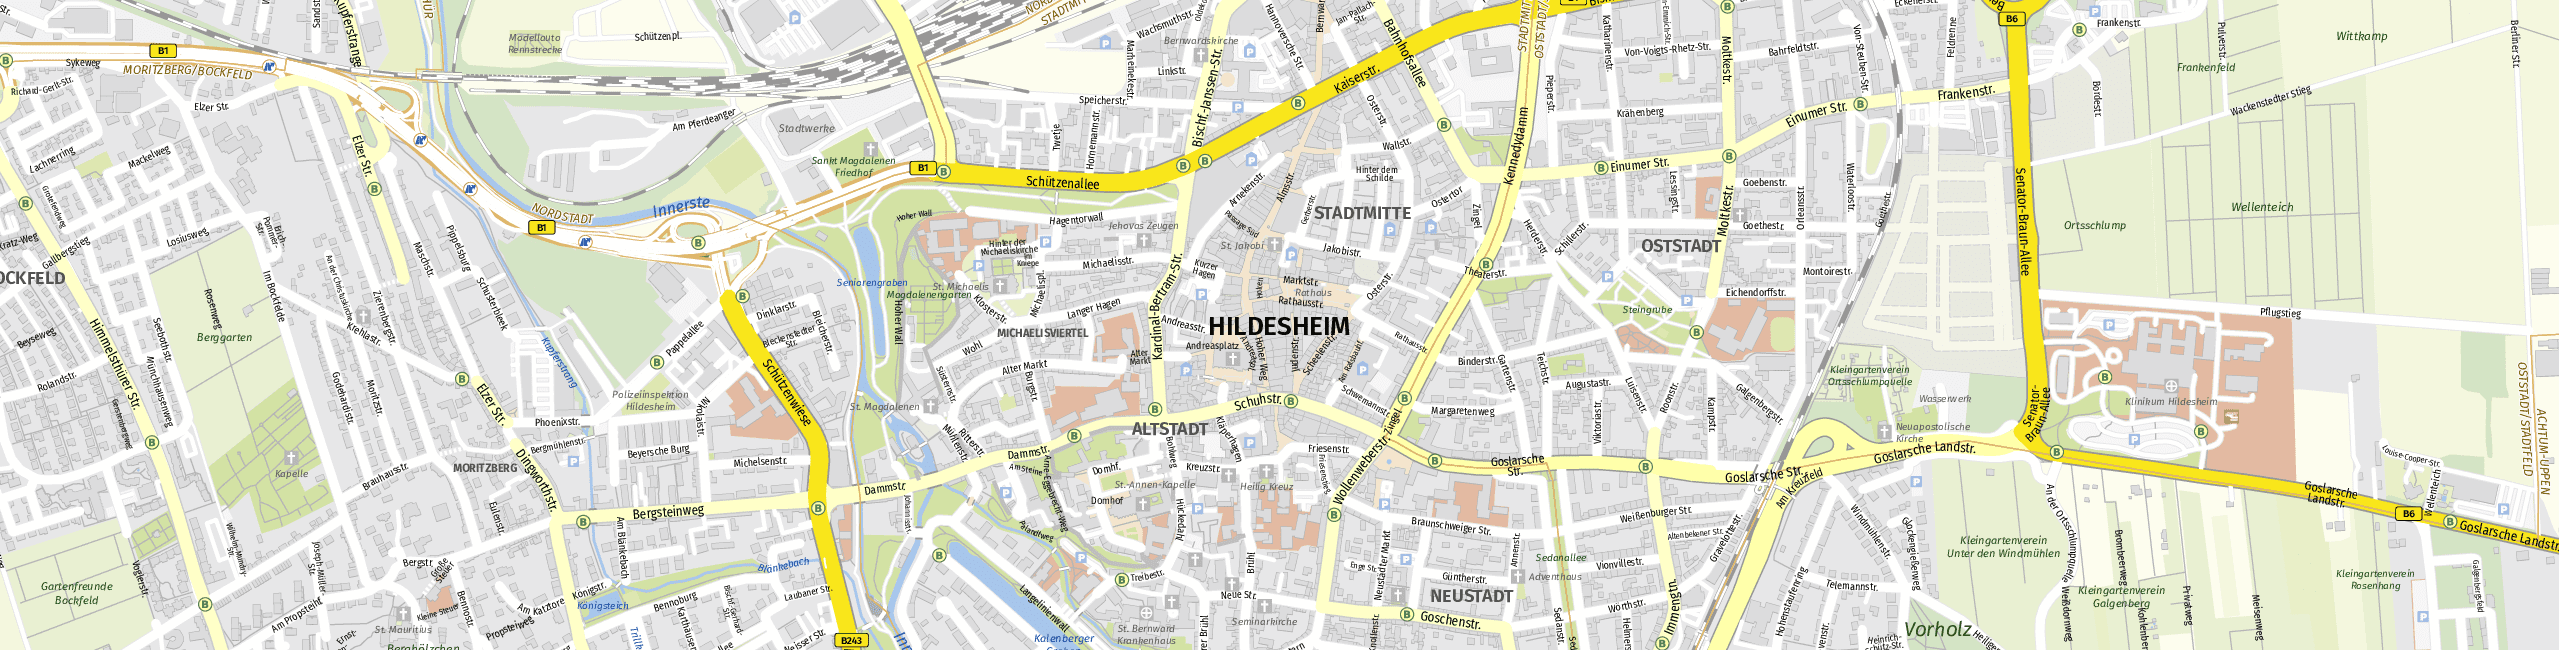 Stadtplan Hildesheim zum Downloaden.